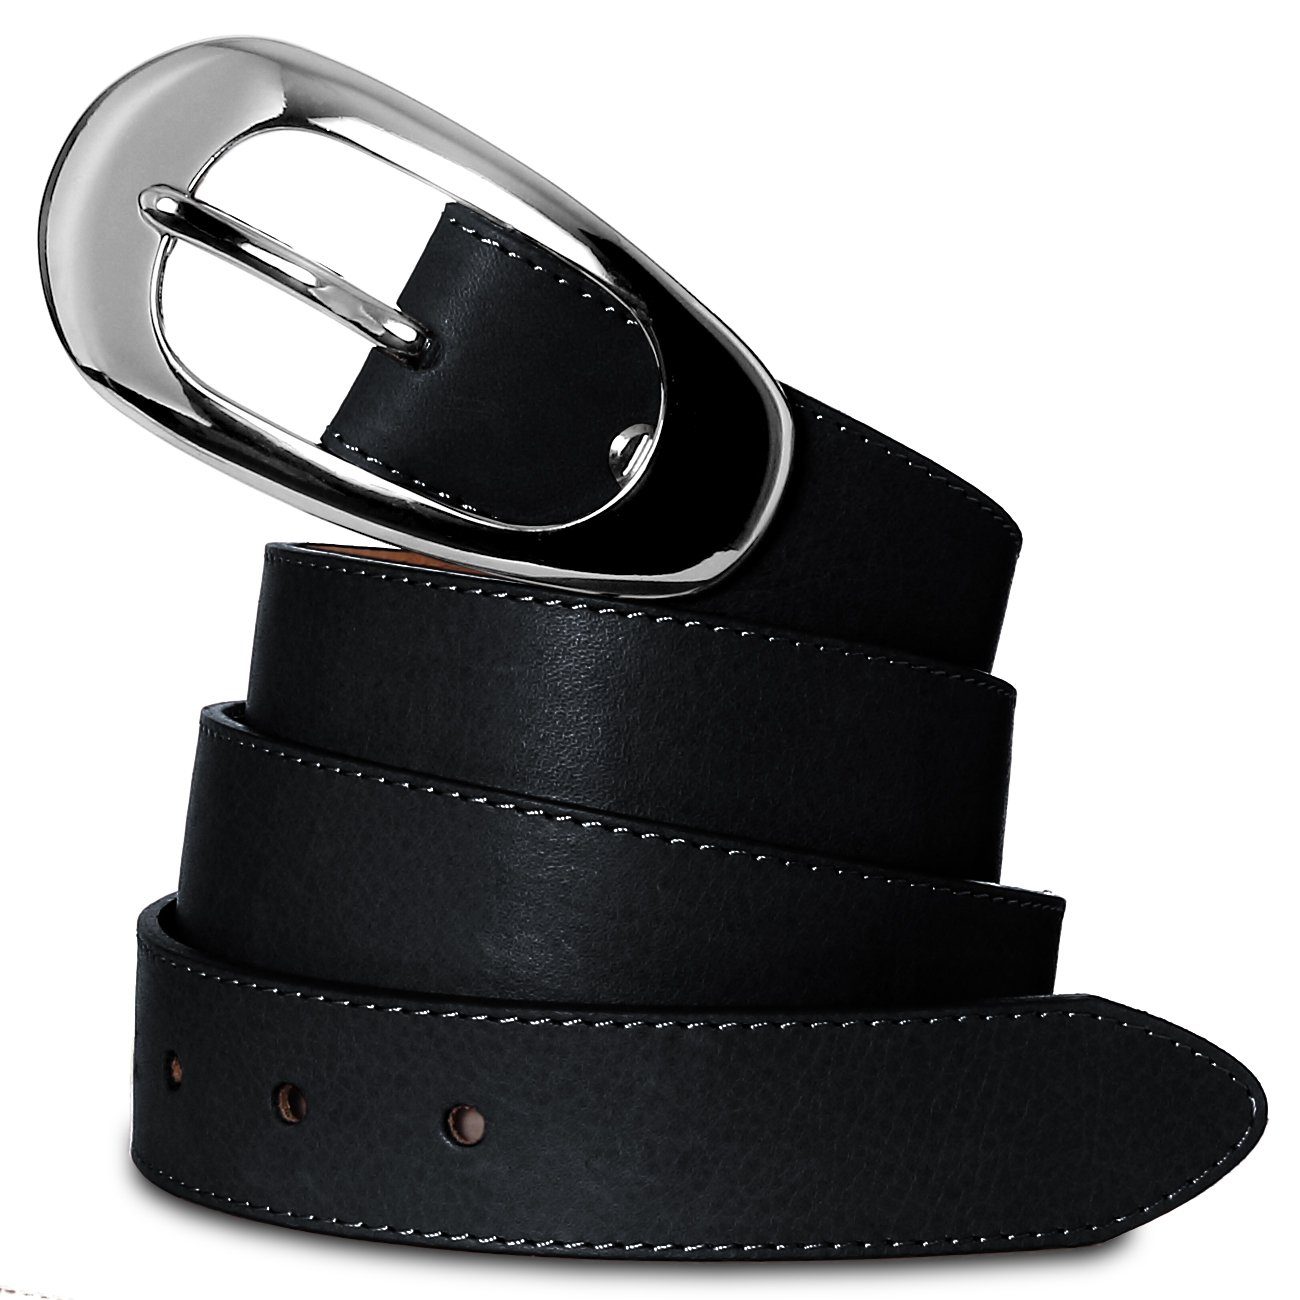 Damengürtel Ledergürtel großer Caspar mit schwarz eleganter Silberschnalle GU236